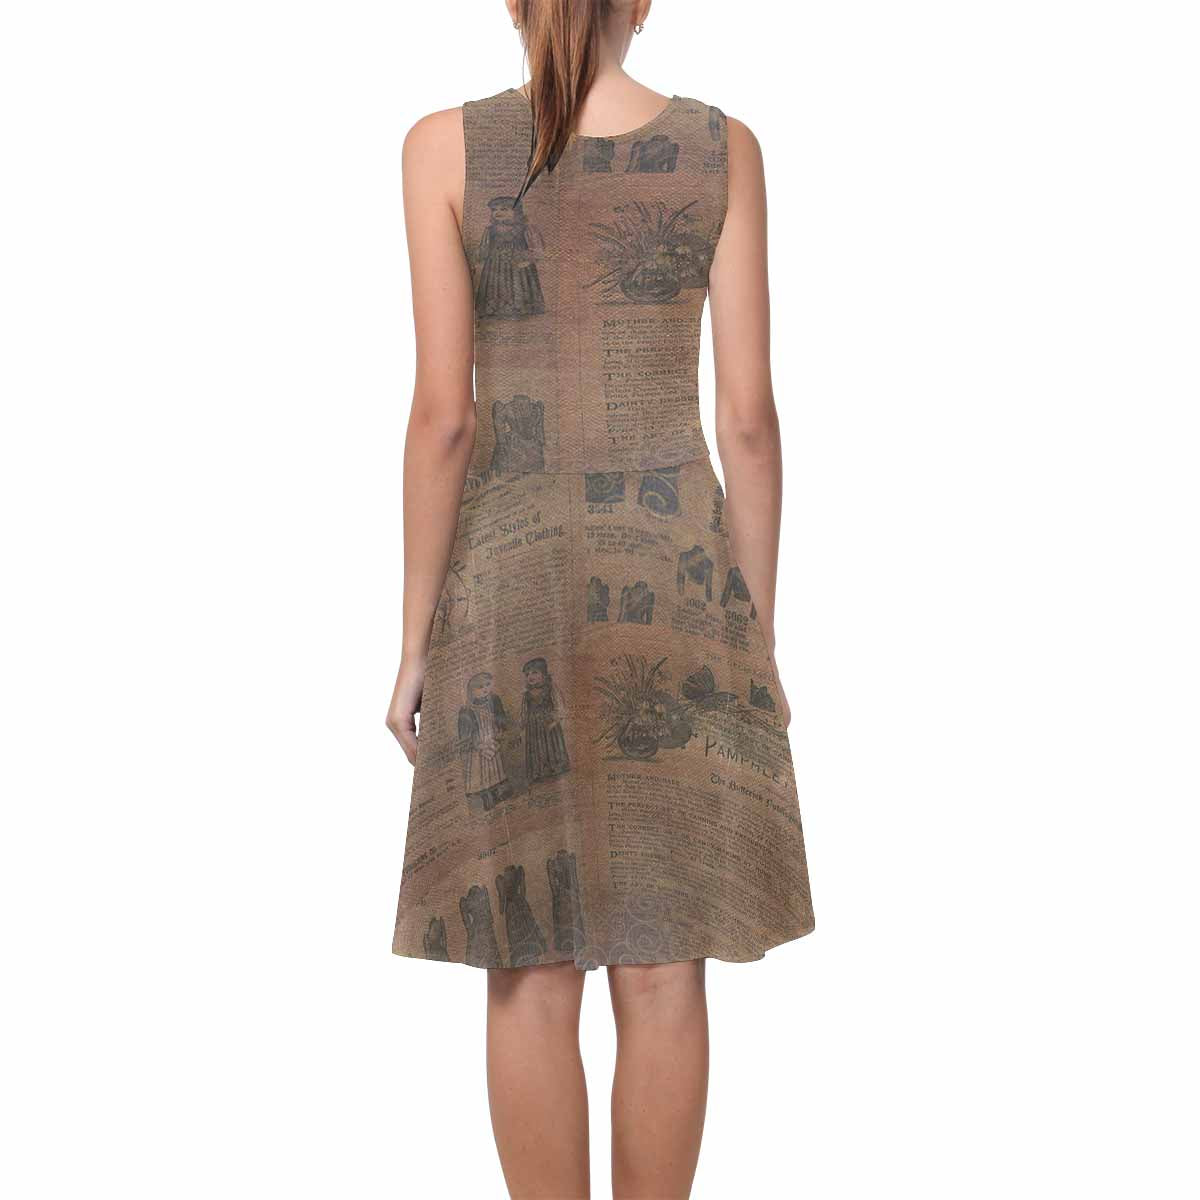 Antique General summer dress, MODEL 09534, design 39